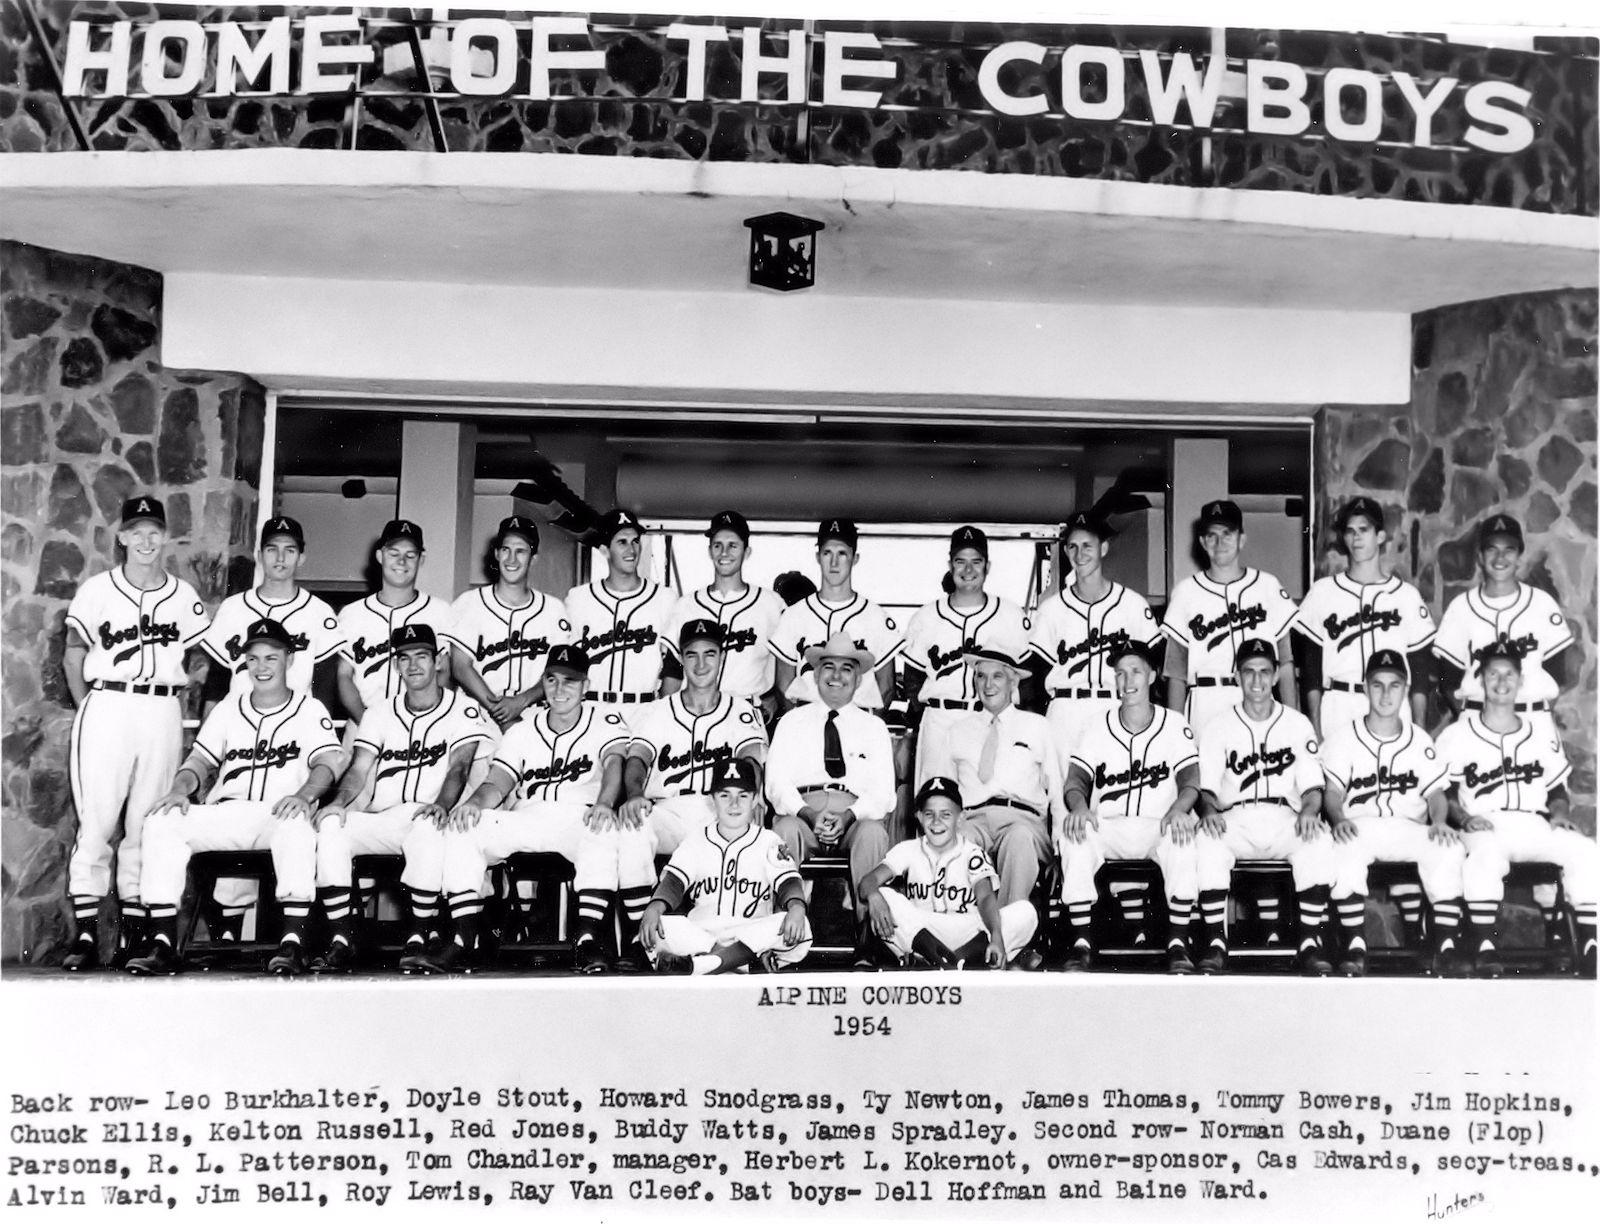 Norm Cash 1954 Alpine-Cowboys front row 1st left            